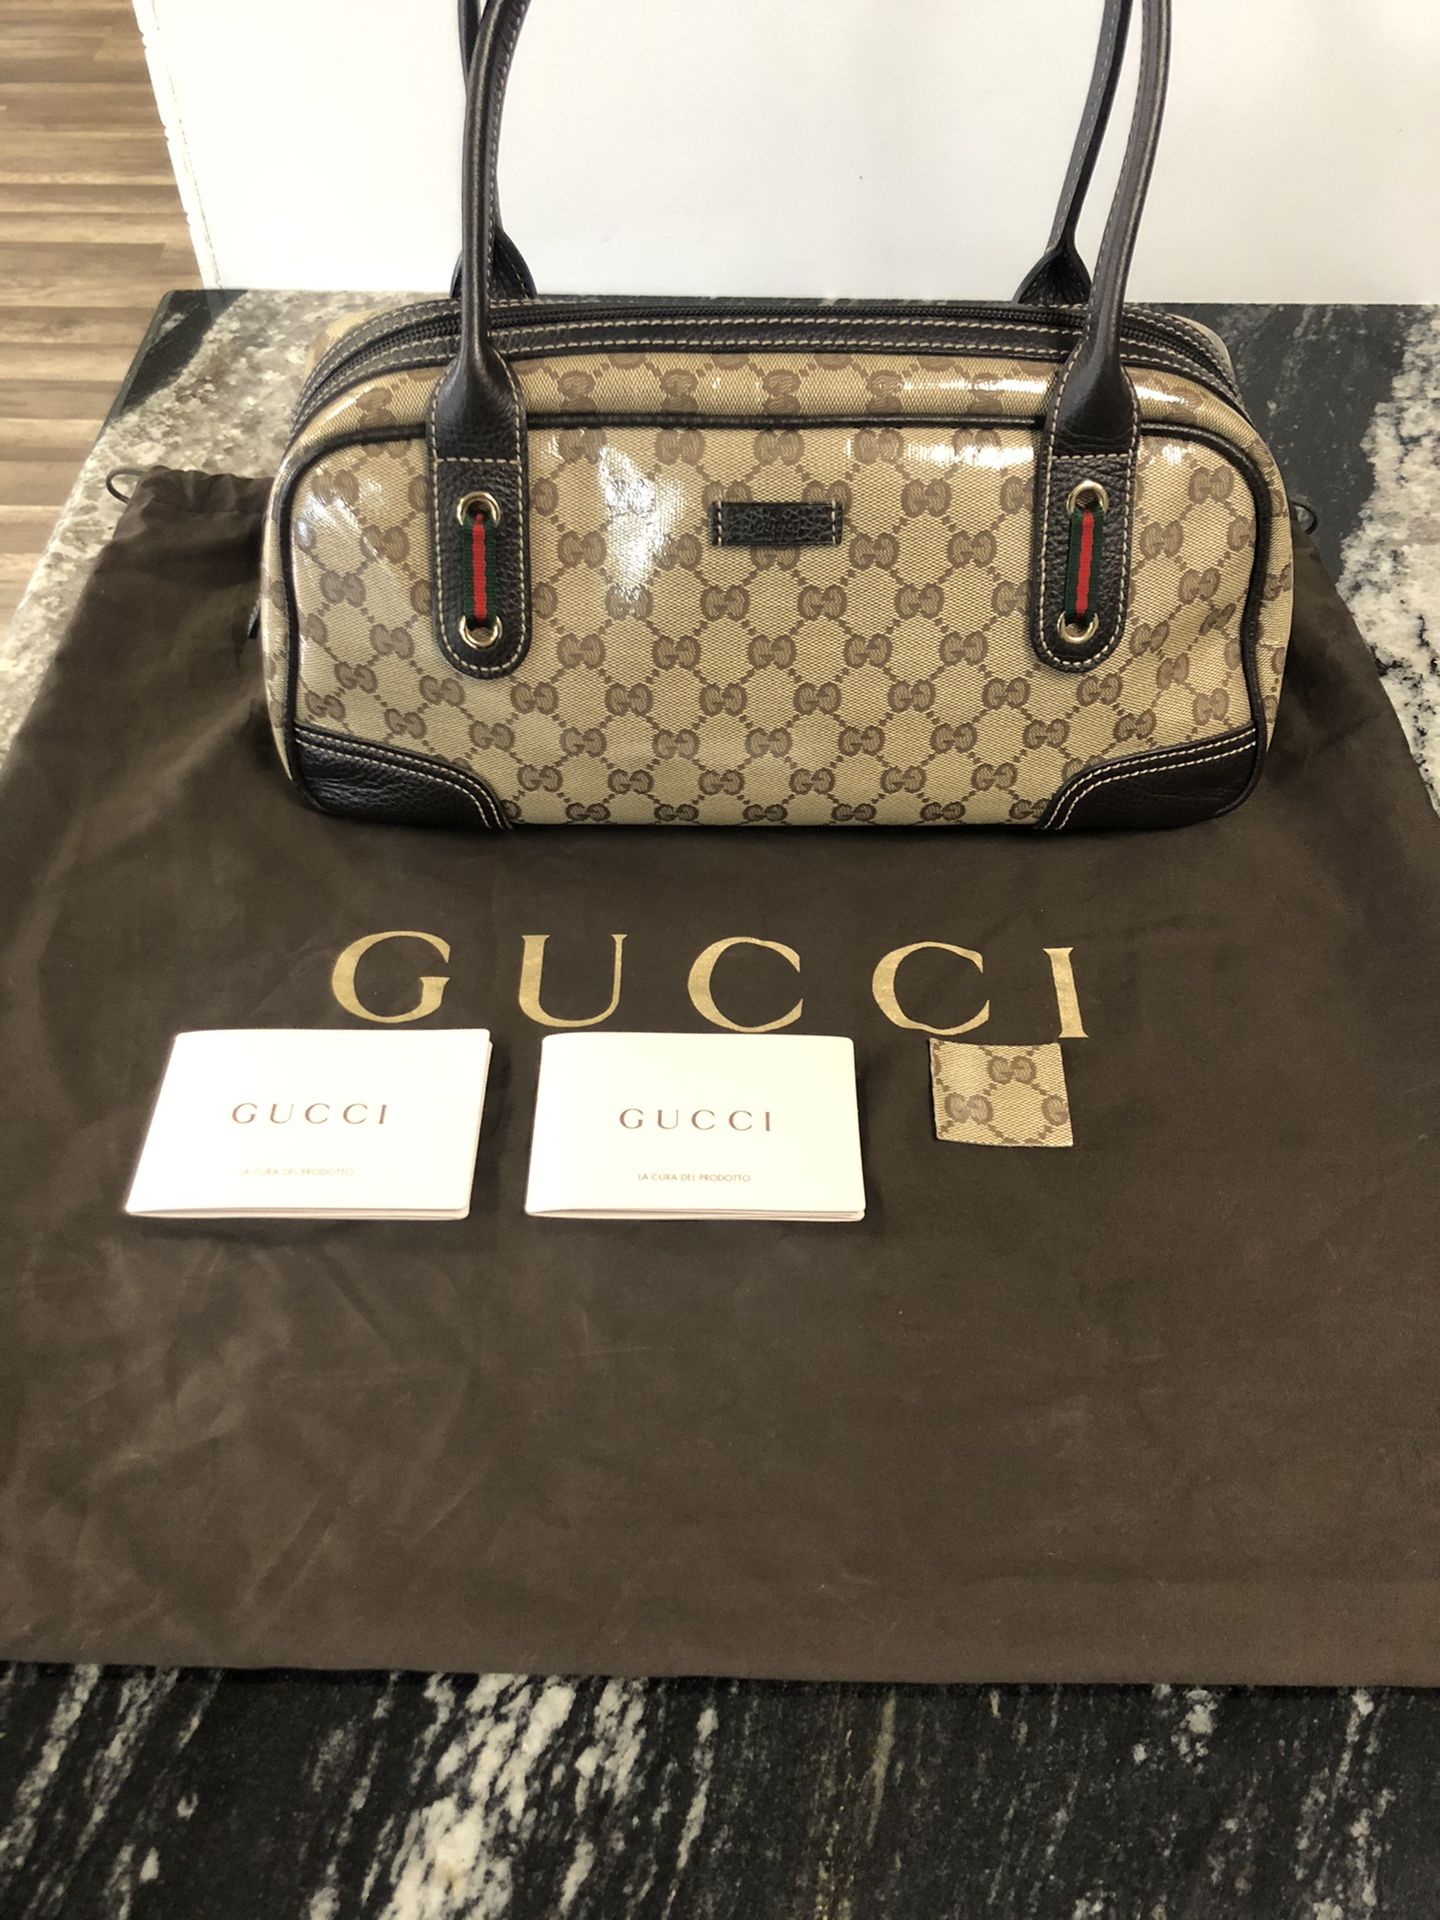 Gucci medium Handbag 